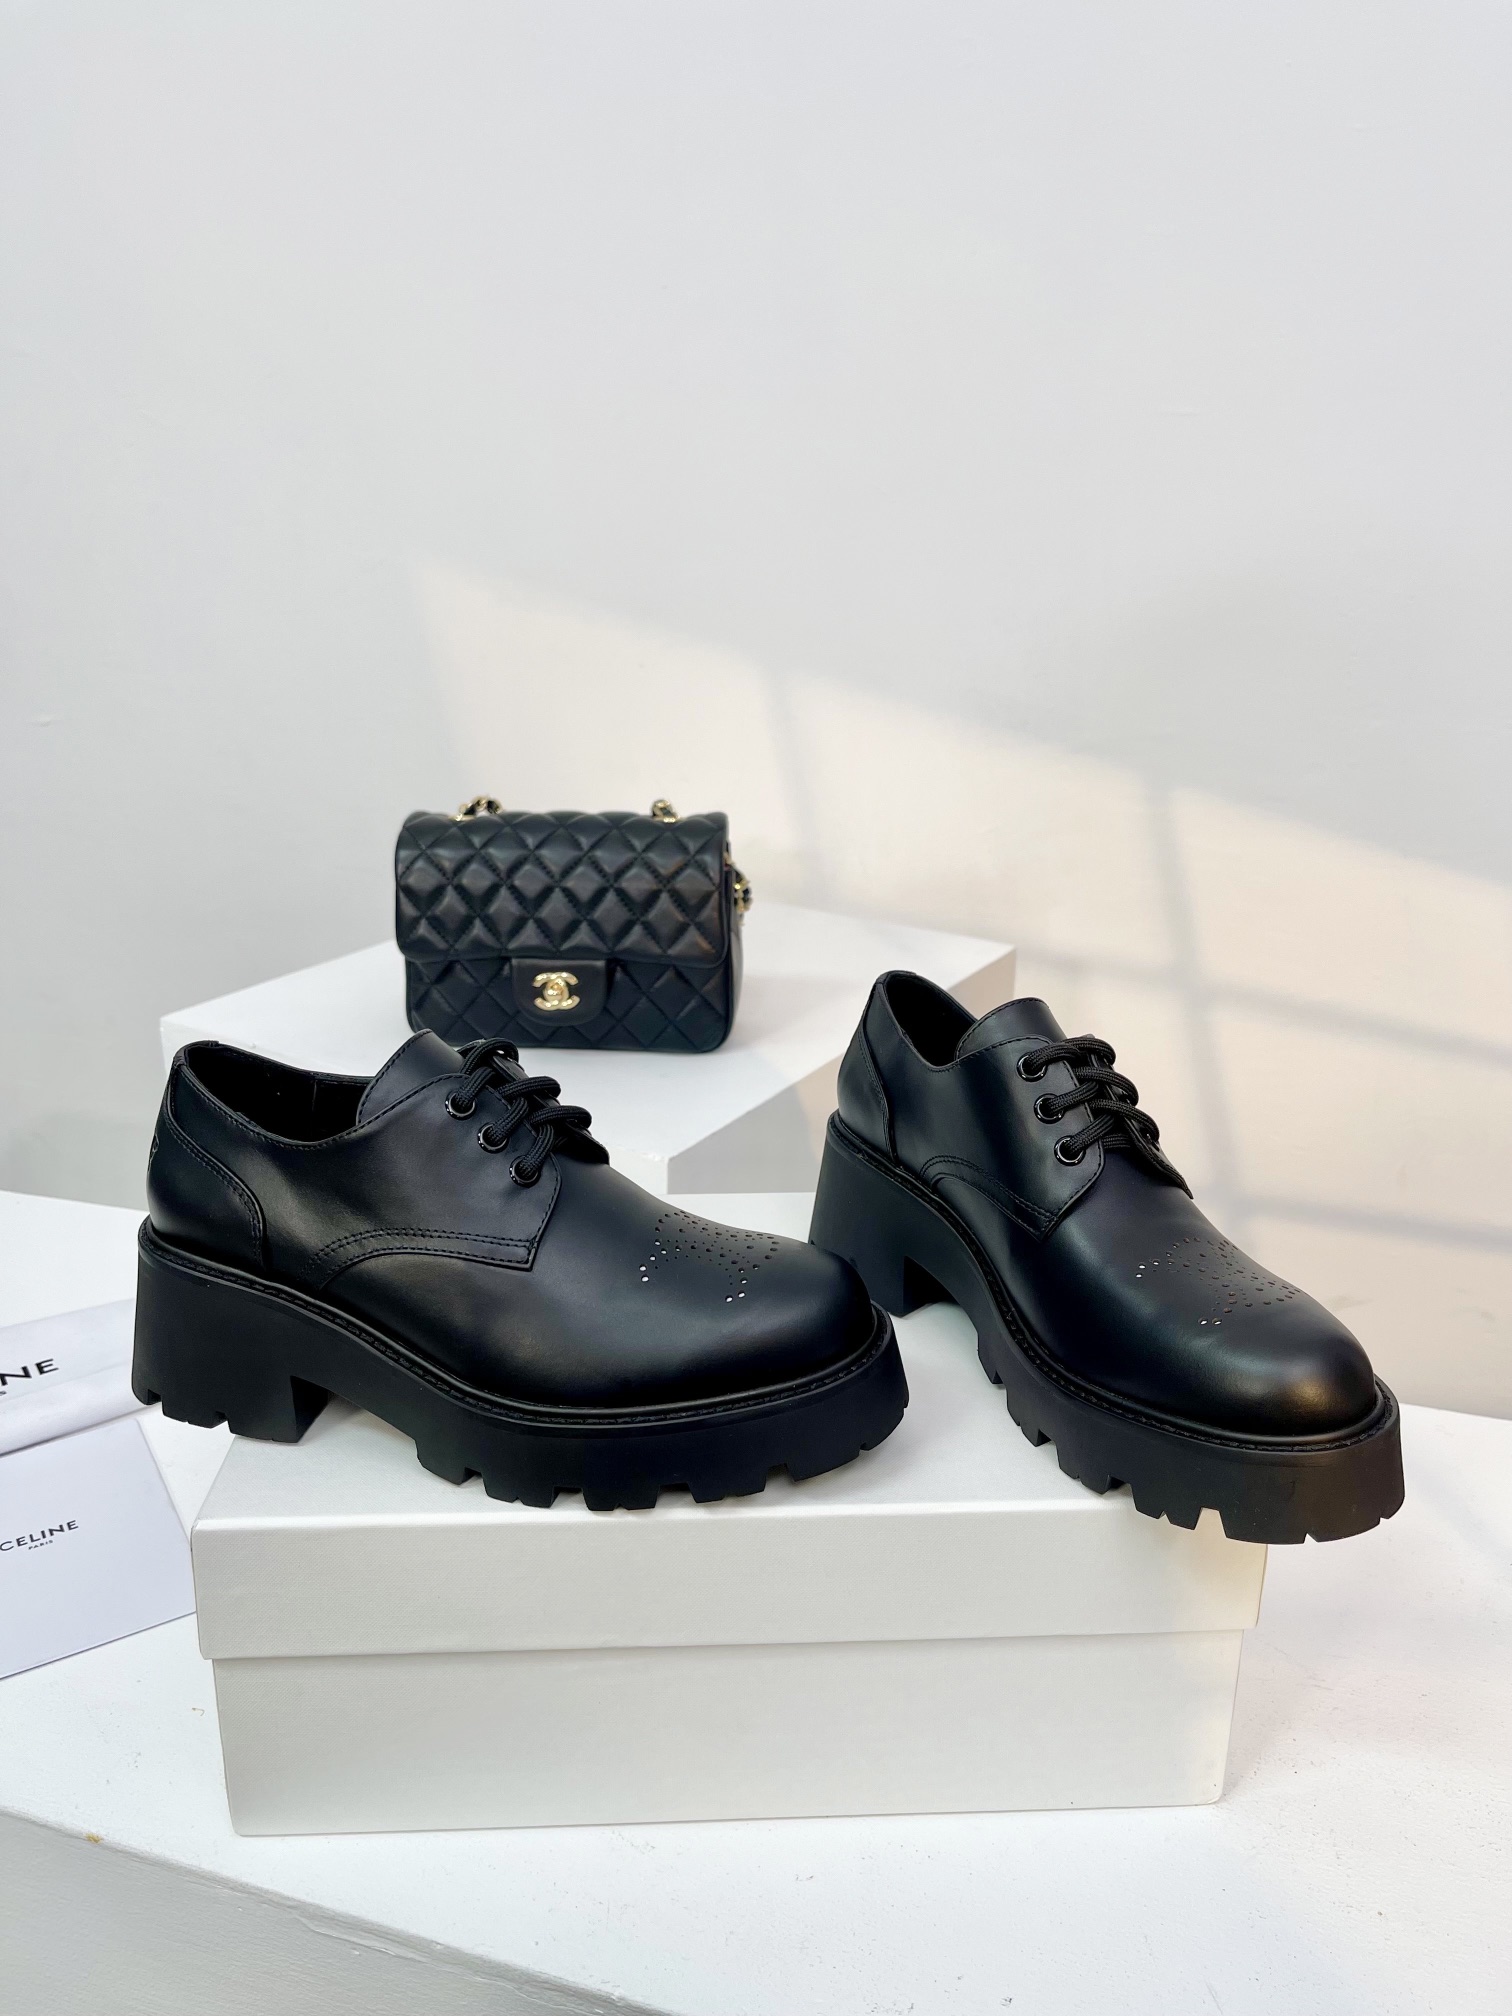 CELINE赛琳24新款玛丽珍复古中性系带单鞋！源于法国巴黎时尚设计品牌一系列乐福鞋经典复古质感满满.标